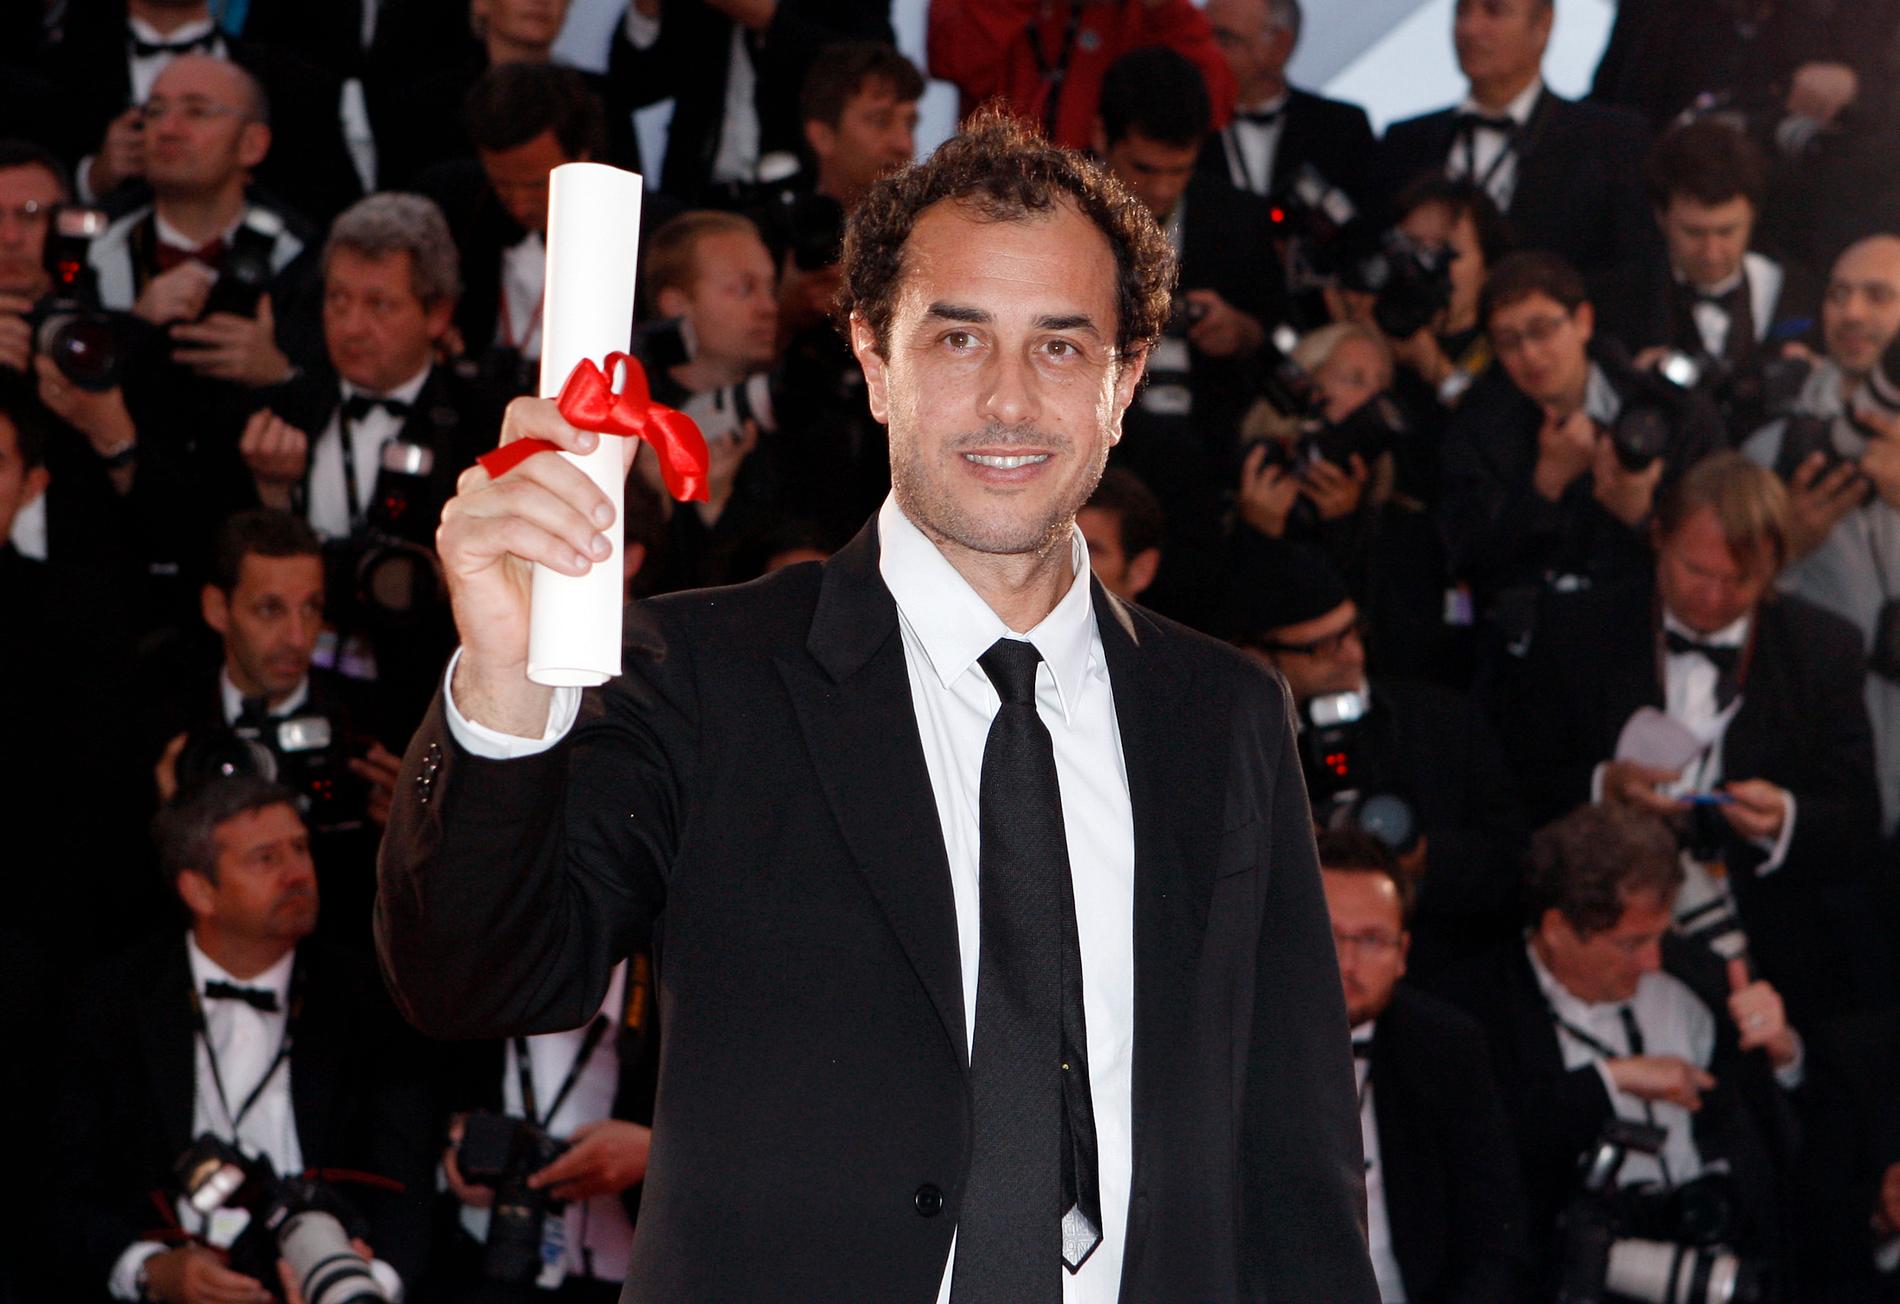 Matteo Garrones "Gomorra" släpps i en nyrestaurerad version. Arkivbild från Cannesfestivalen 2008.